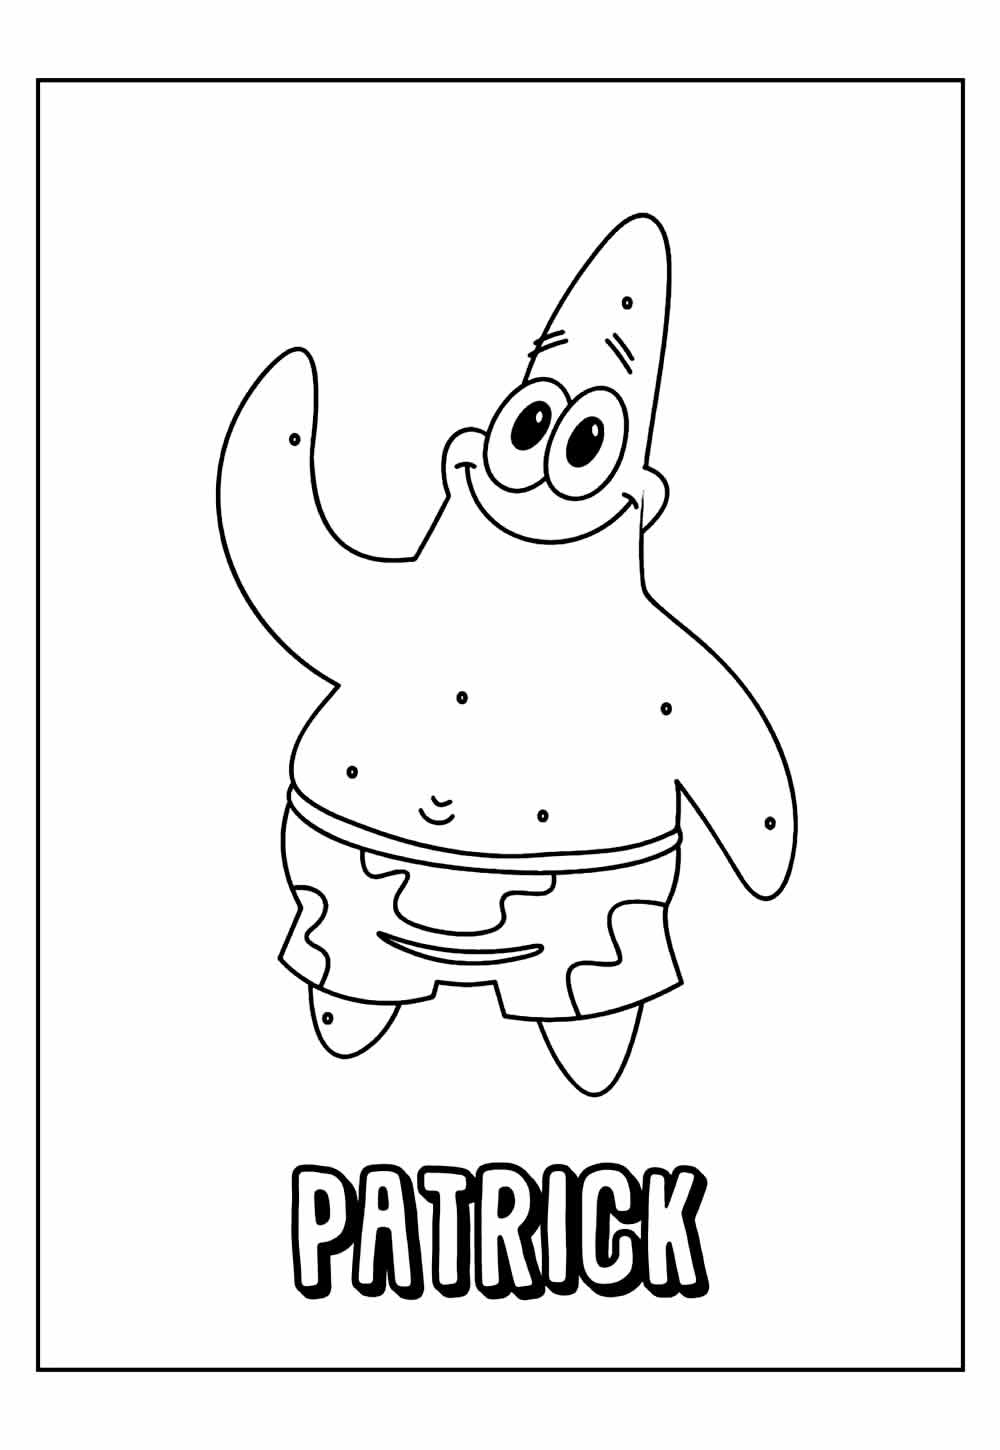 Desenhos do Patrick para imprimir e colorir